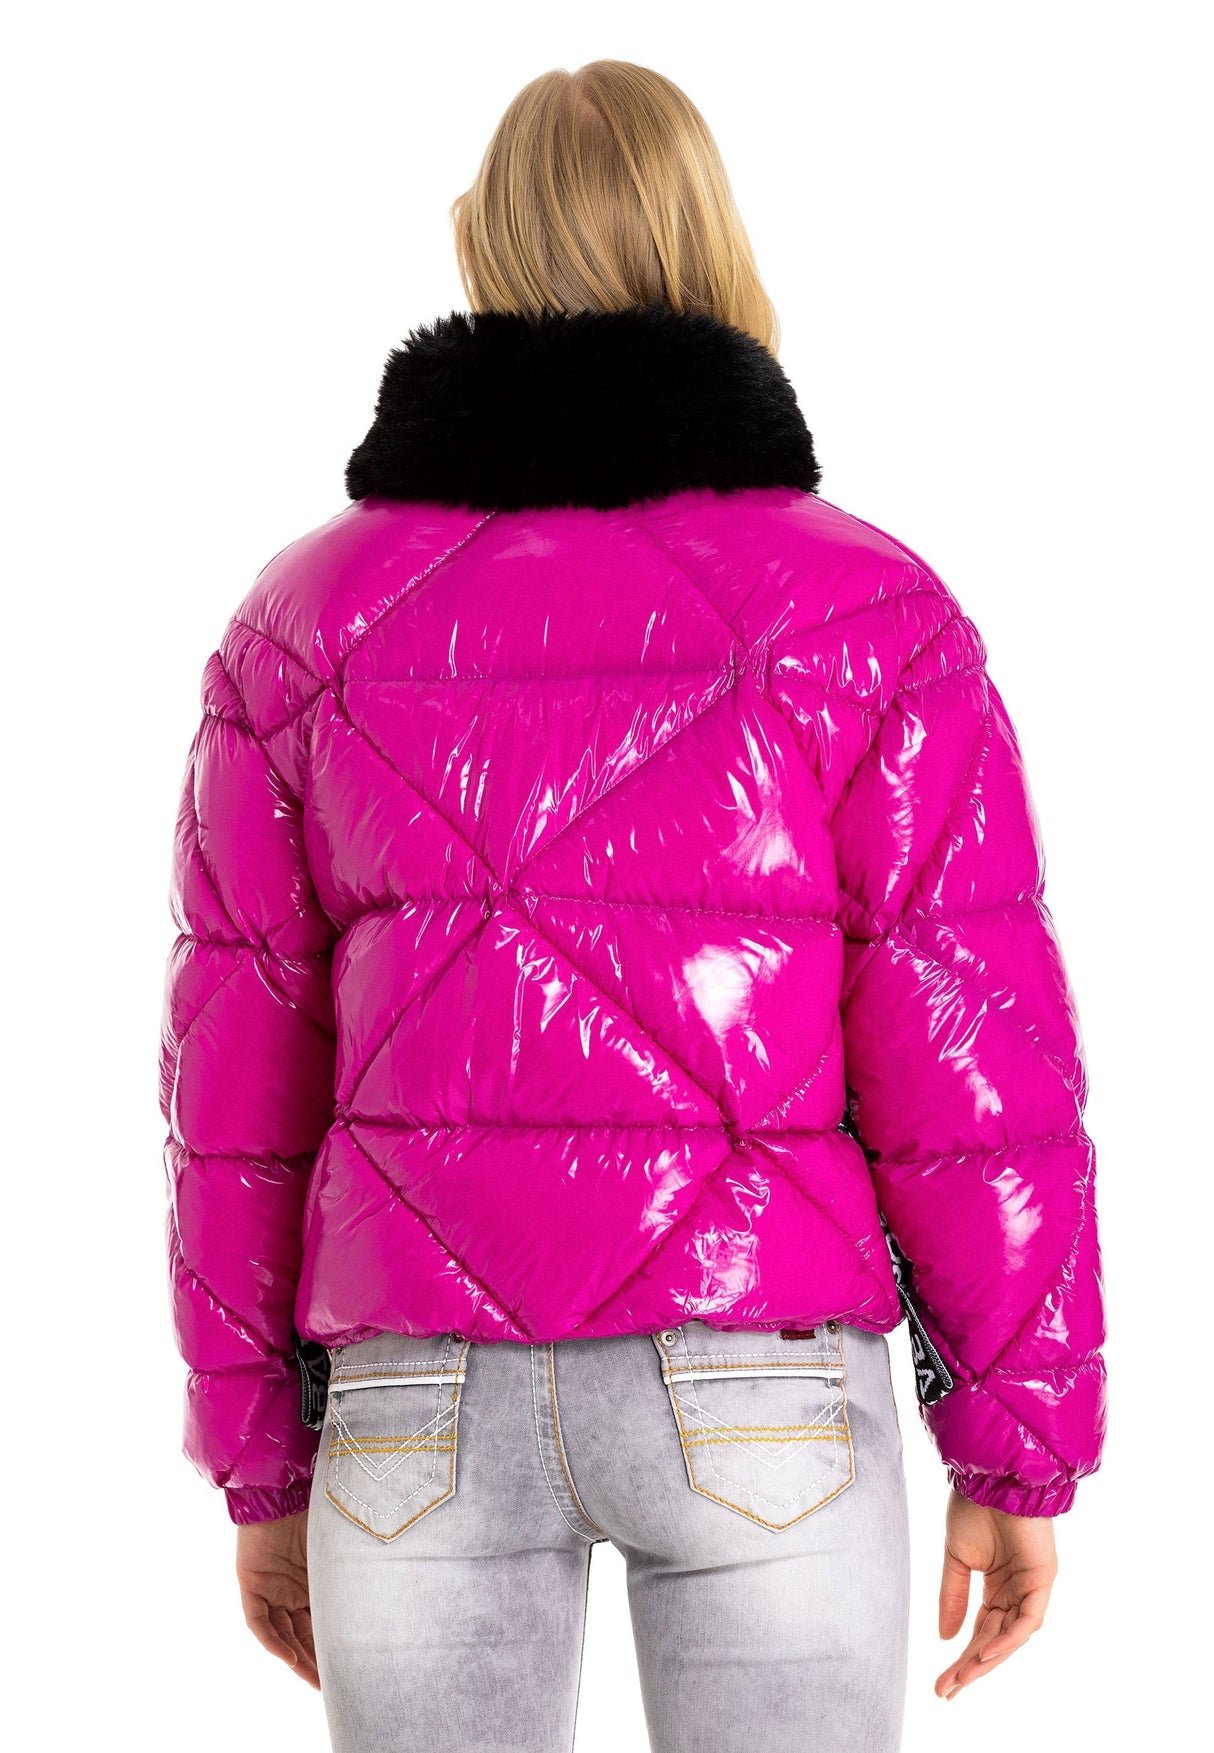 Giacca invernale femminile WM134 con collare di pelliccia sintetica